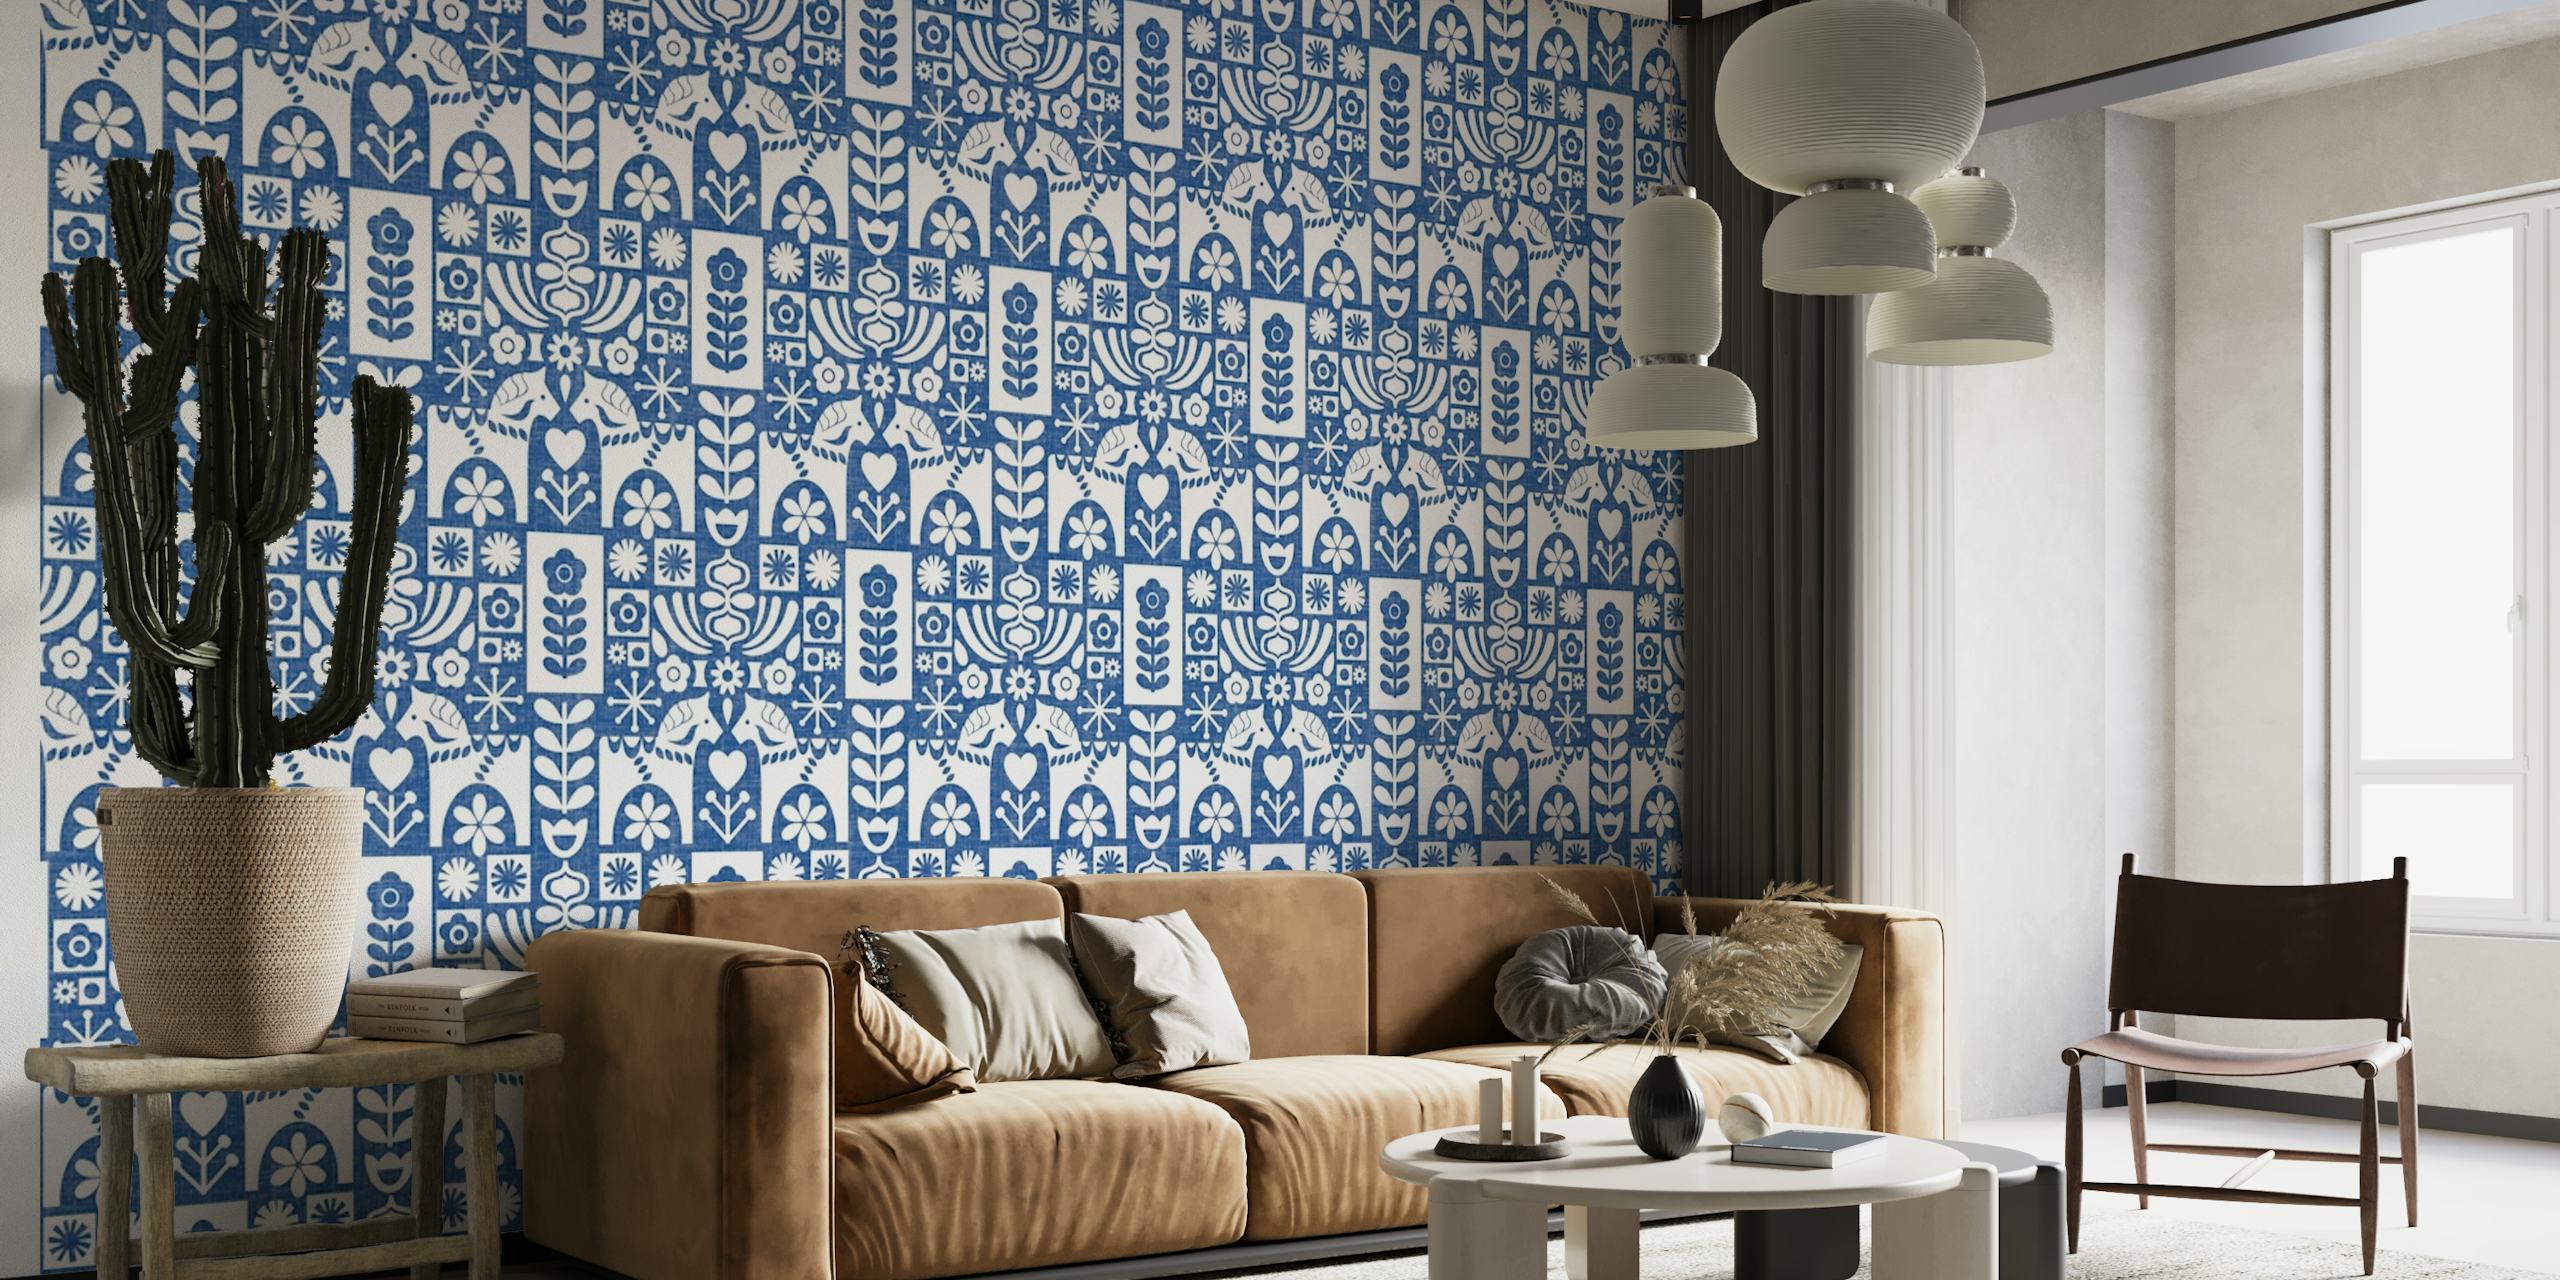 Zweedse volkskunst, moderne blauwe muurschildering uit het midden van de eeuw met bloemen- en geometrische patronen